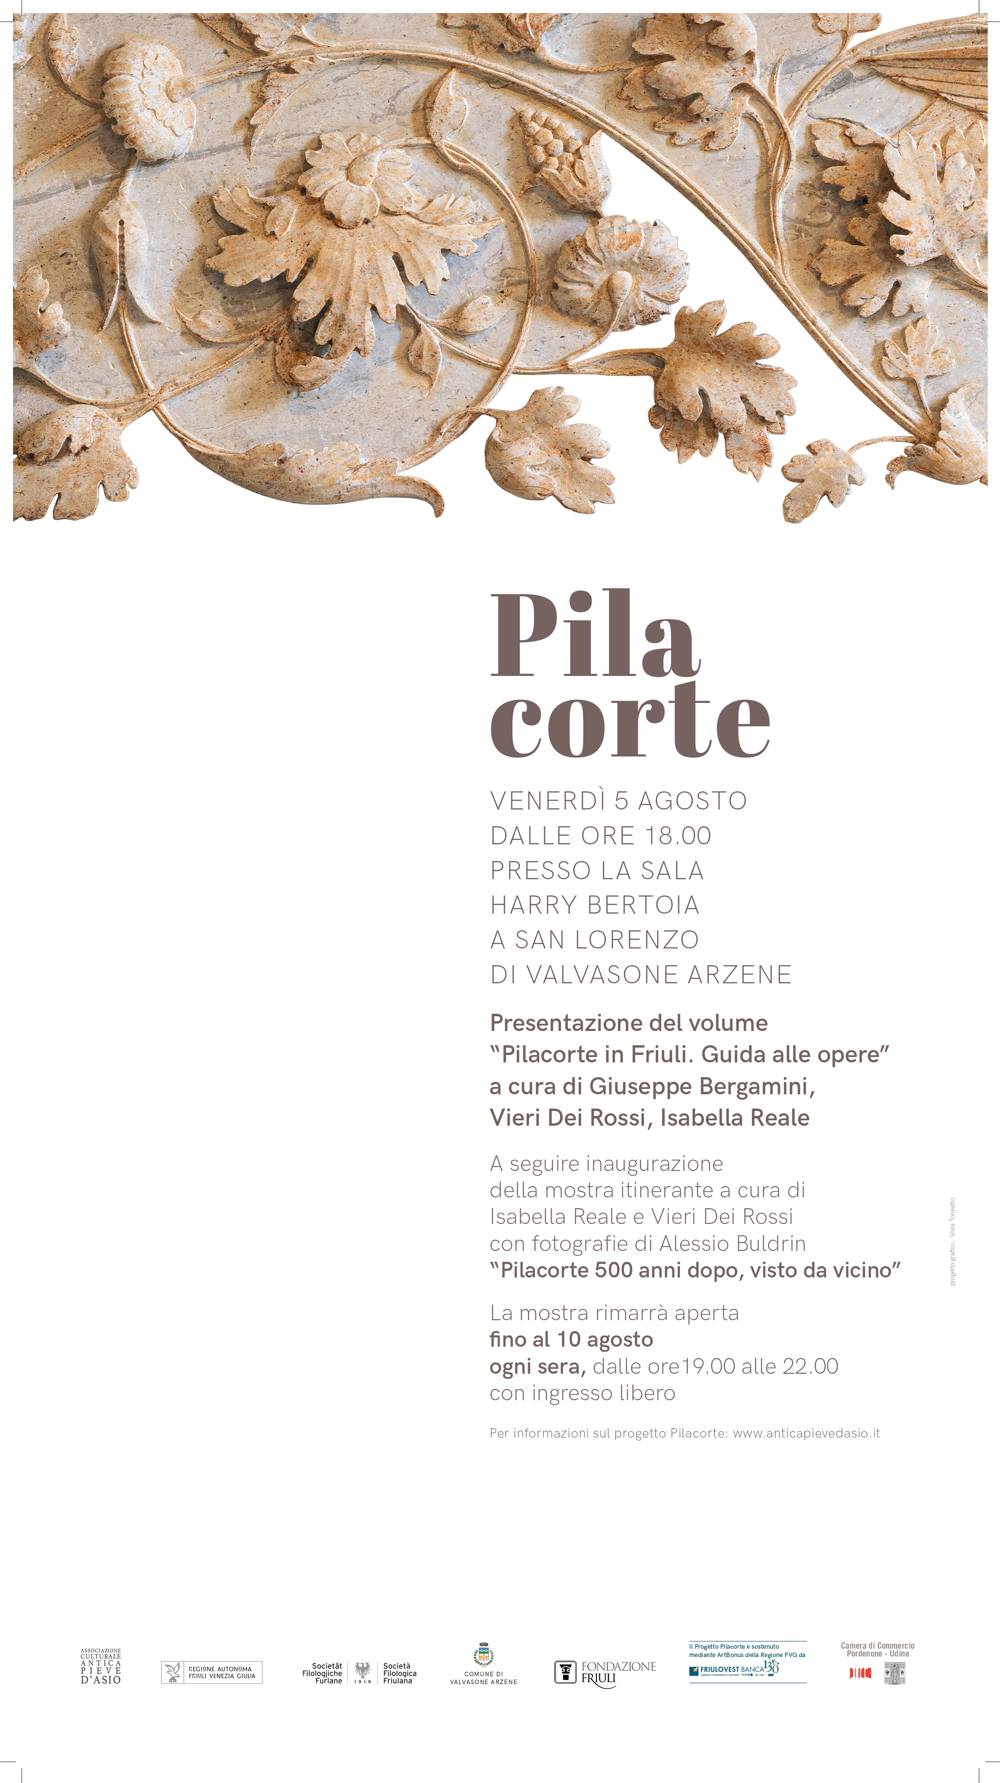 Pilacorte in Friuli, presentazione del volume, venerdì 5 agosto 2022 ore 18